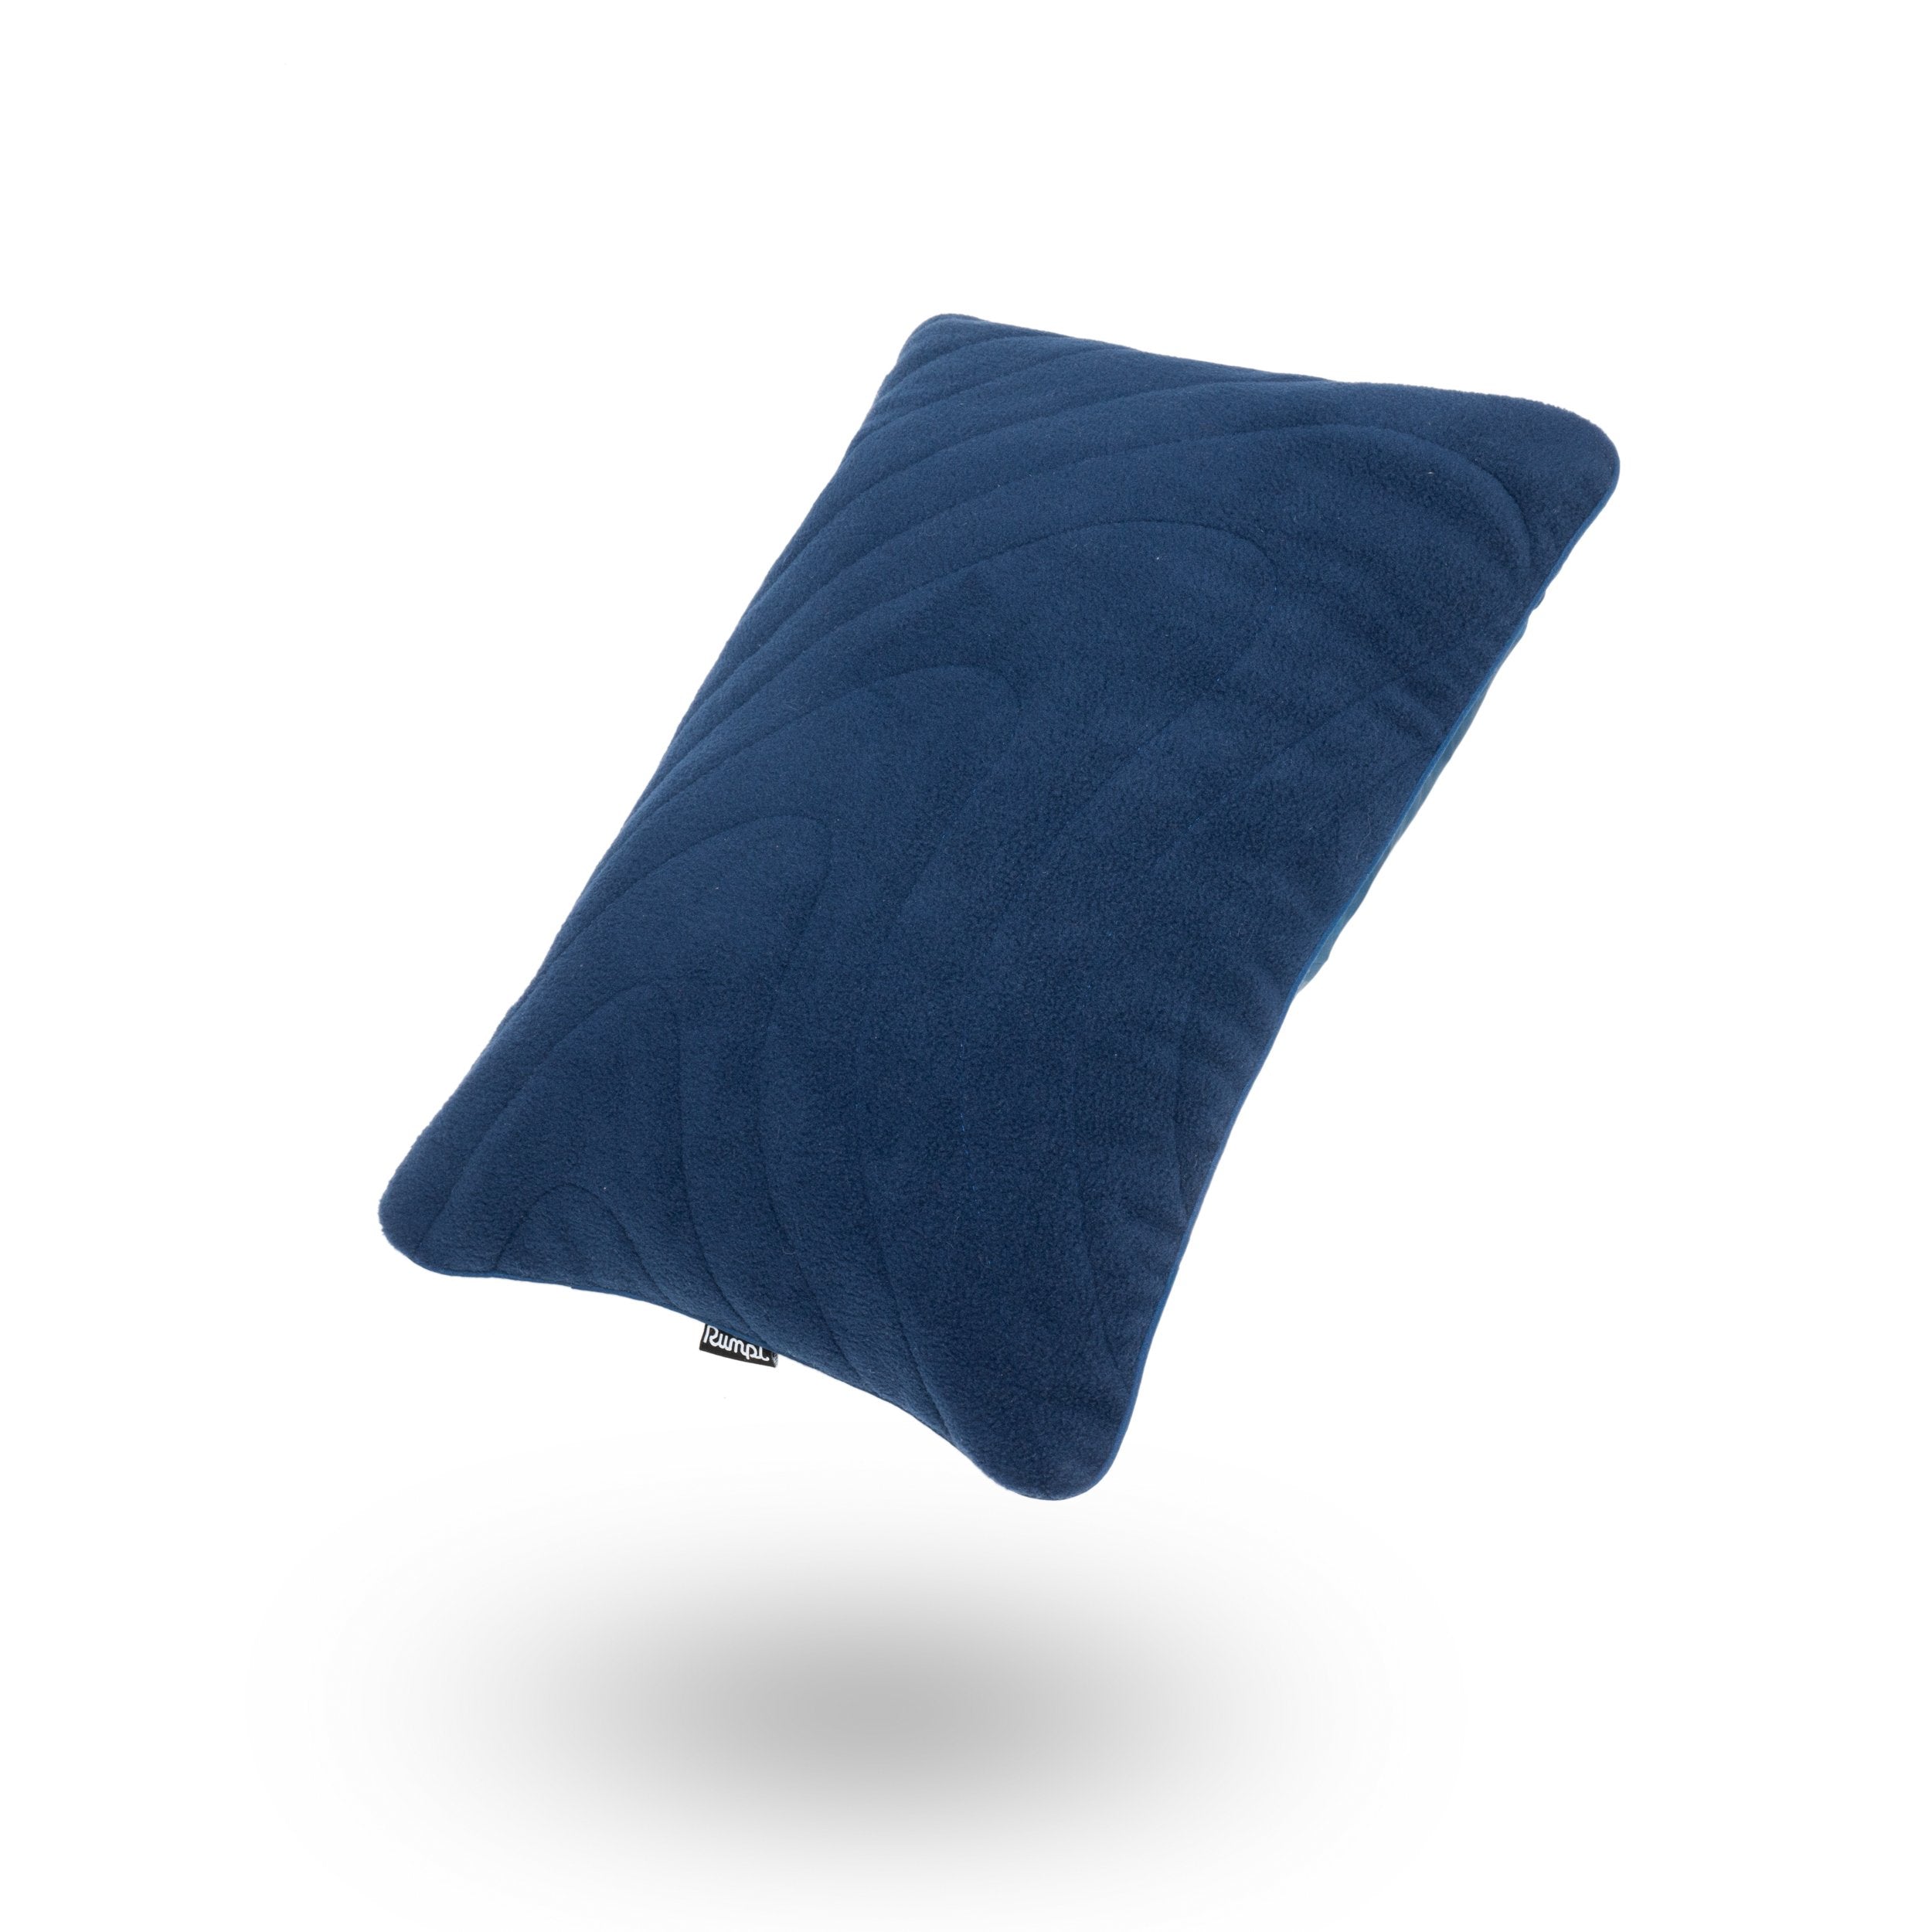 http://www.rumpl.com/cdn/shop/products/rumpl-stuffable-pillow-one-size-the-stuffable-pillowcase-deepwater-tosp-dpw-o-17969338318920.jpg?v=1660904505